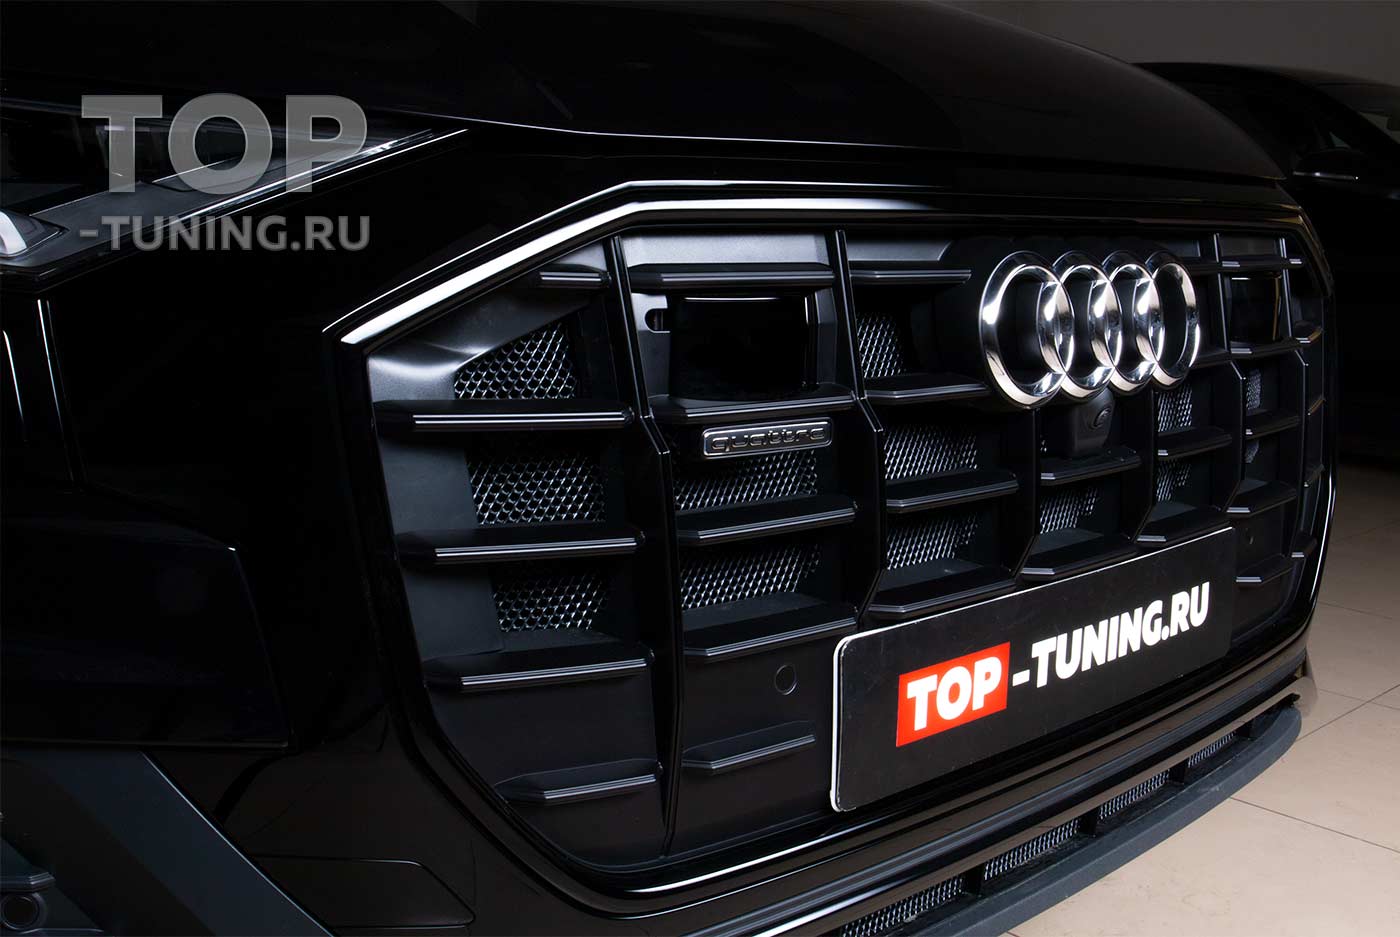 Тюнинг ателье TOP-TUNING Москва, оказывает услуги по дооснащению автомобилей AUDI по установке фирменных сеток-фильтров из эластичного пластика